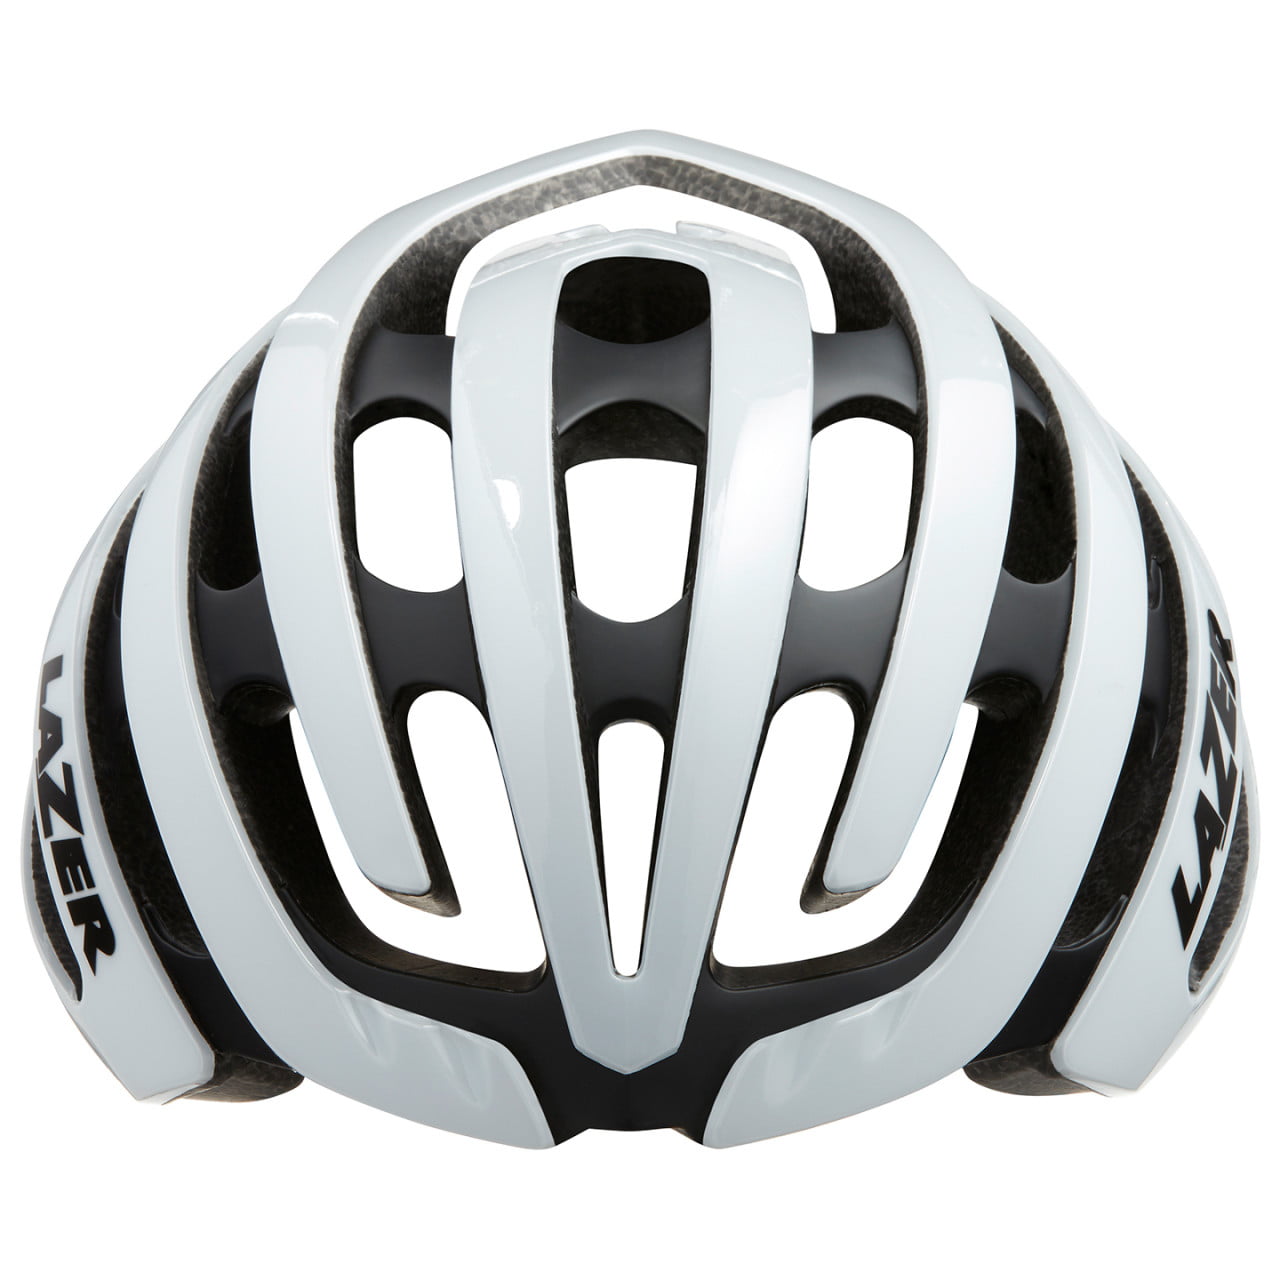 Z1 Road Bike Helmet